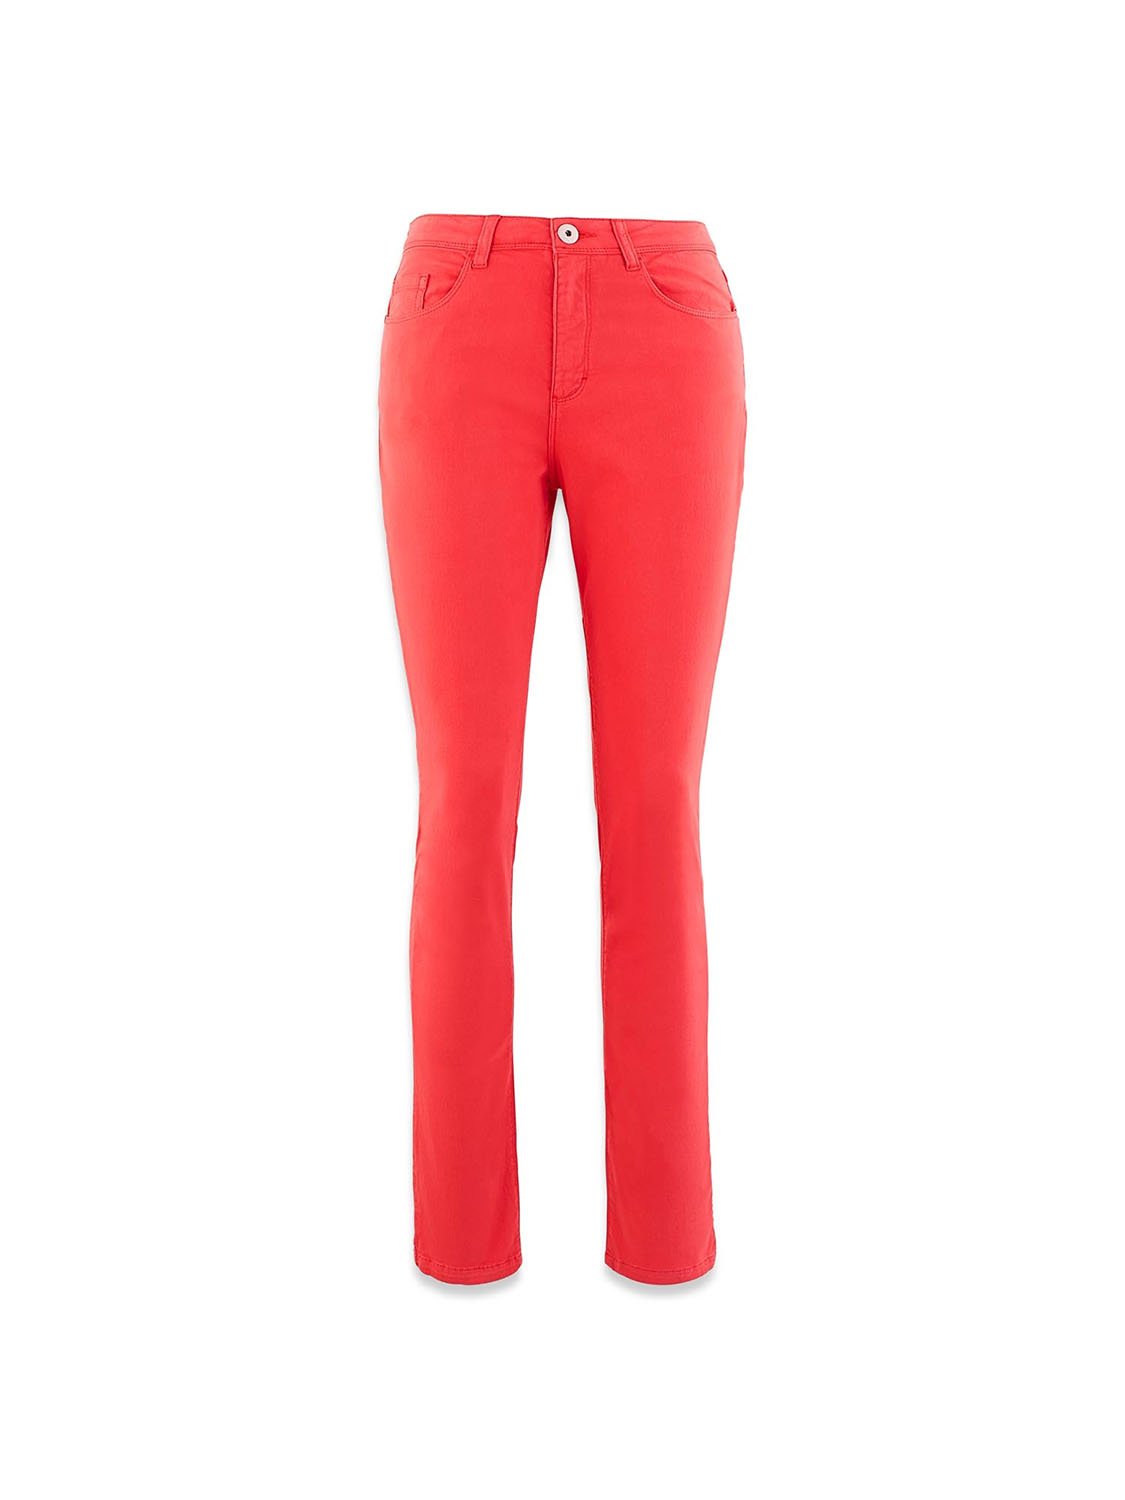 Pantalon Femme Coton Recyclé Rouge